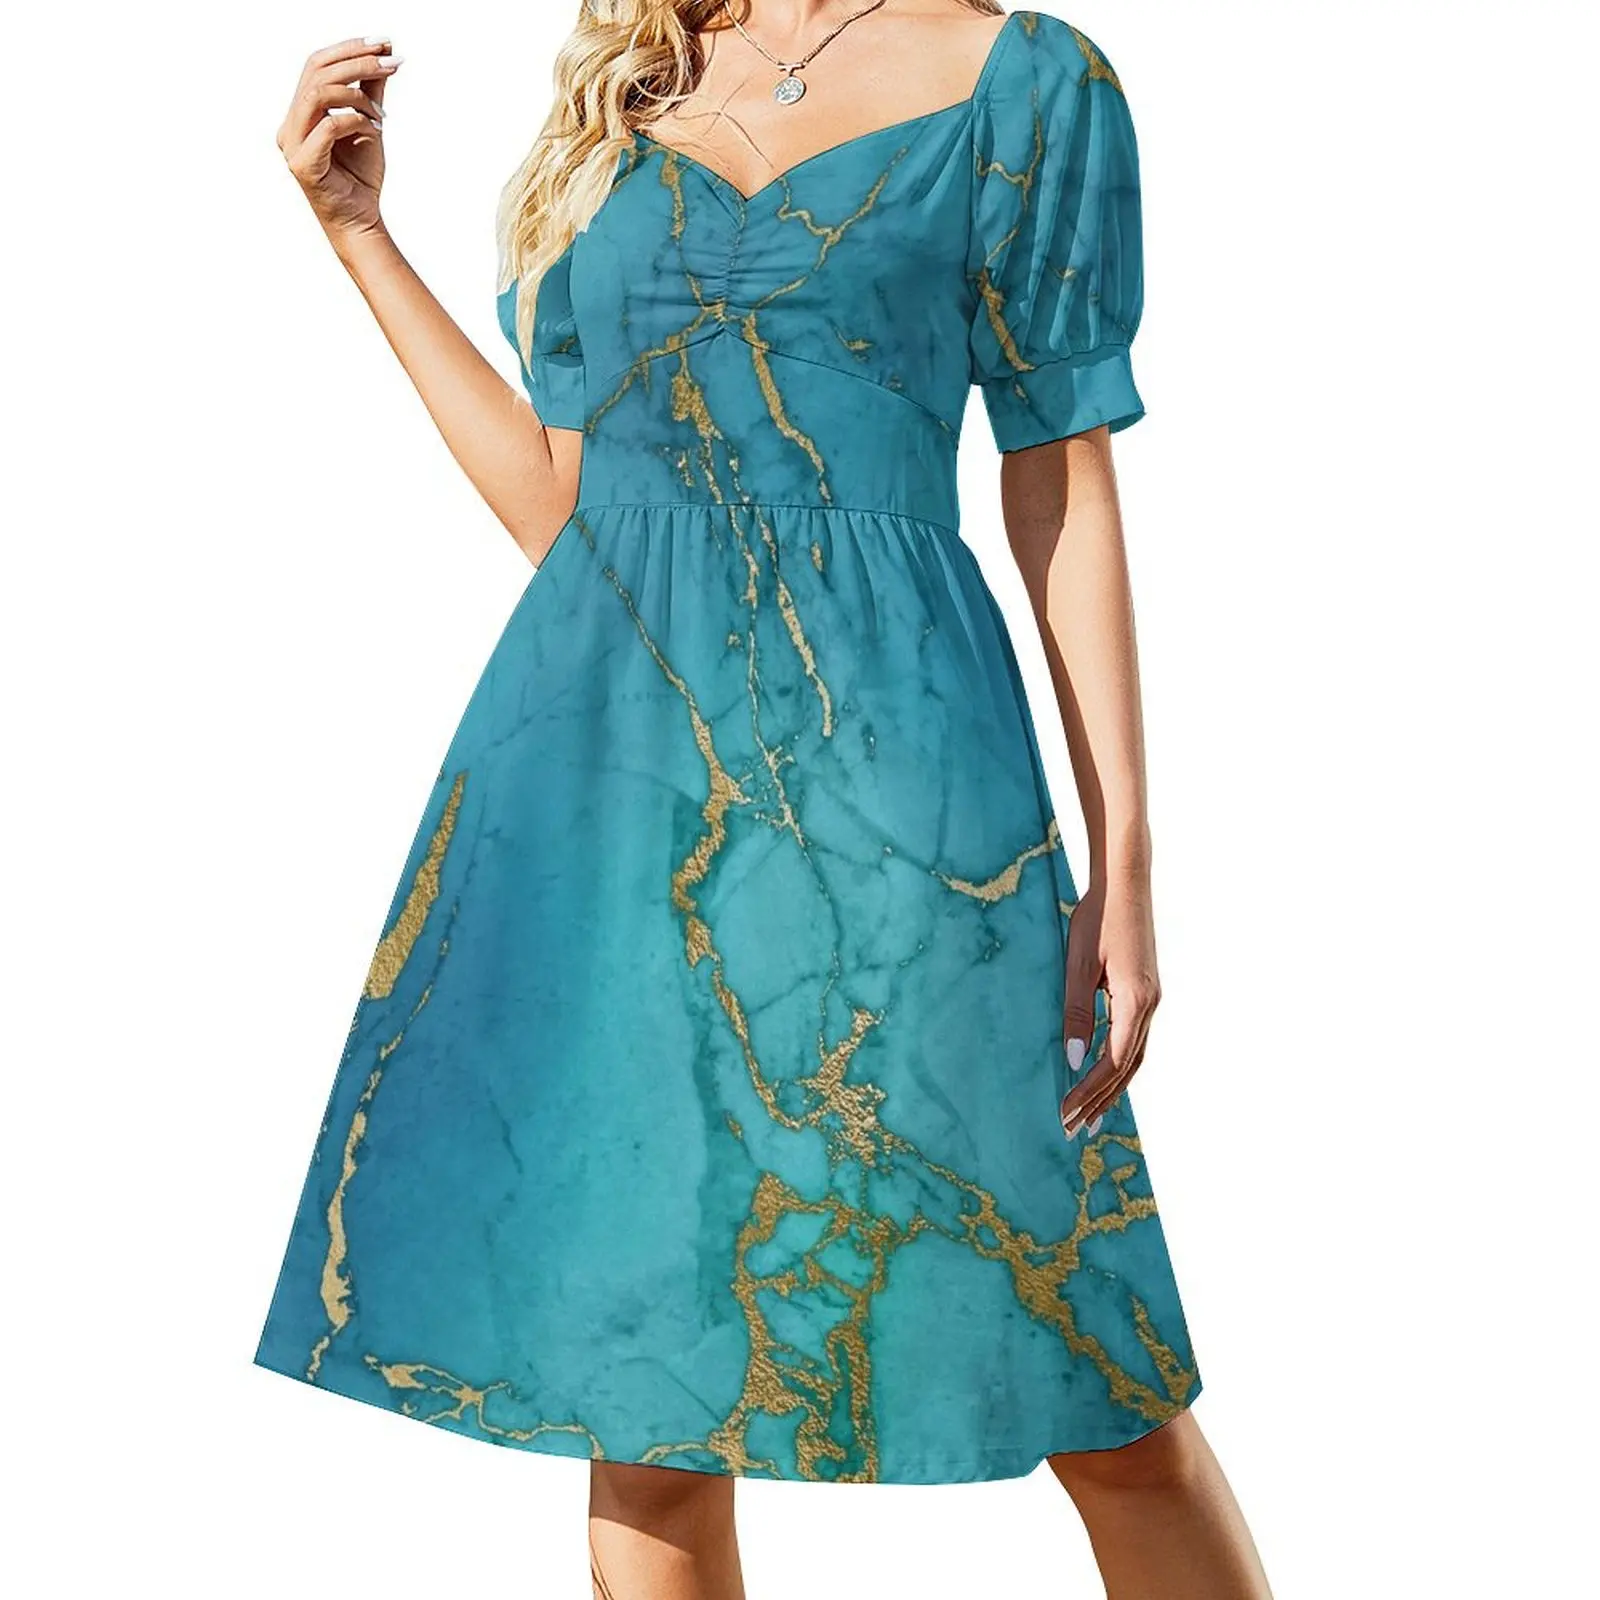 

Blue Gilded Marble Sleeveless Dress Casual dresses dress women summer woman dress